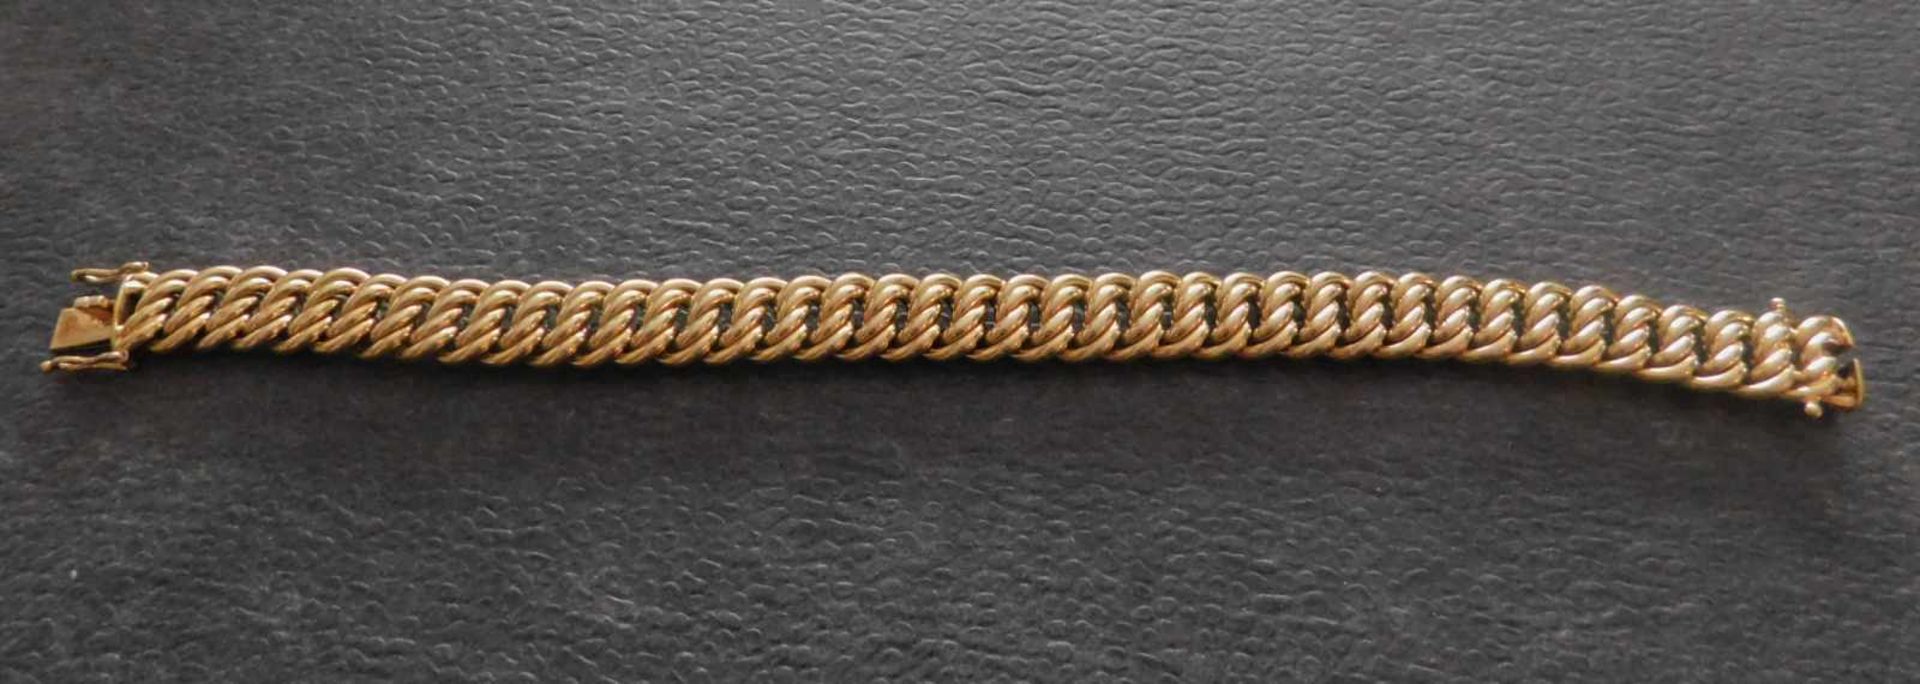 Armband, 585 Gelbgold, 26,4 g, Steckschloss mit 2 Sicherheitsachten1.H.20 Jhdt. Länge ca. 21 cm - Bild 2 aus 3